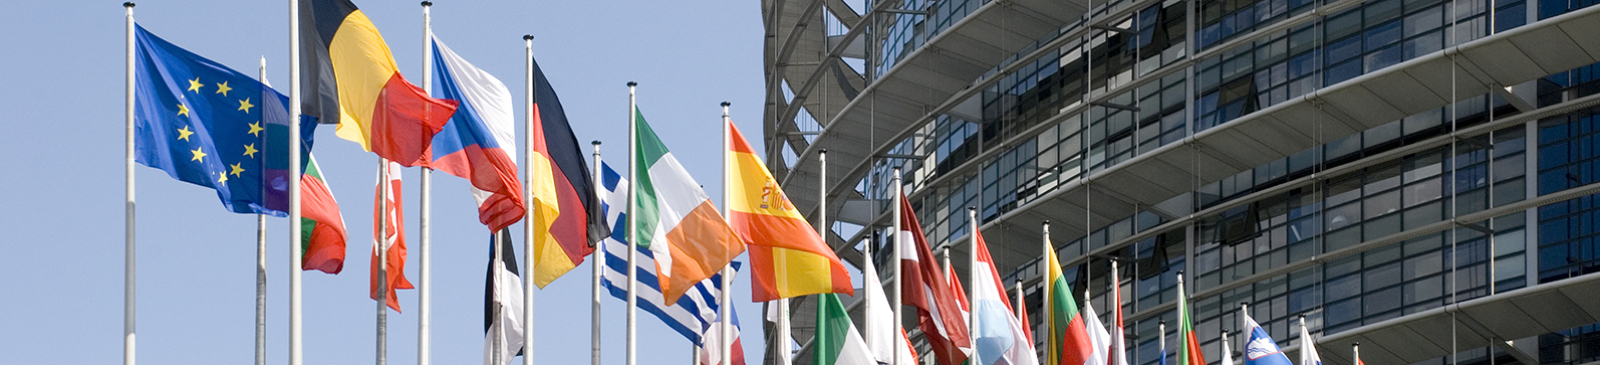 vlaggen voor het Europees parlement